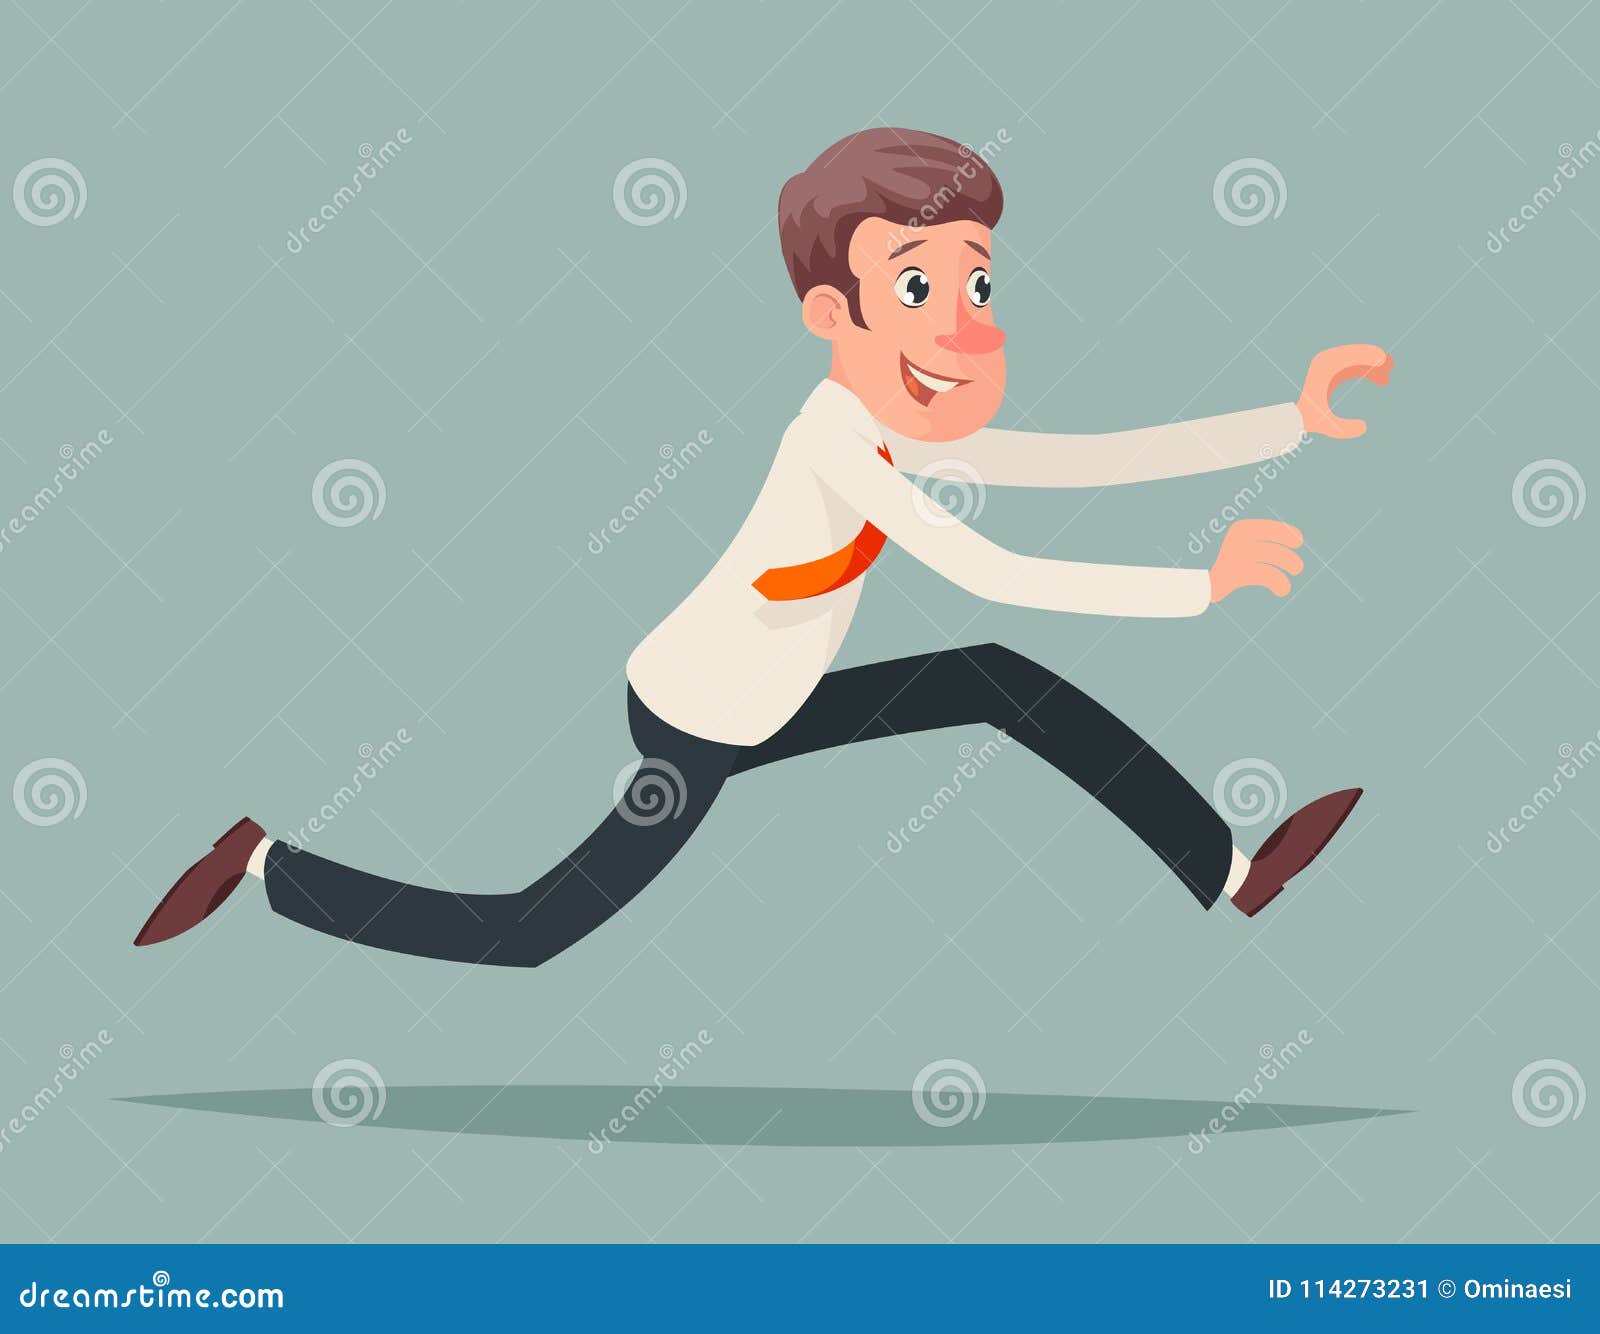 businessman running hurry race rush velocity winner character icon cartoon   